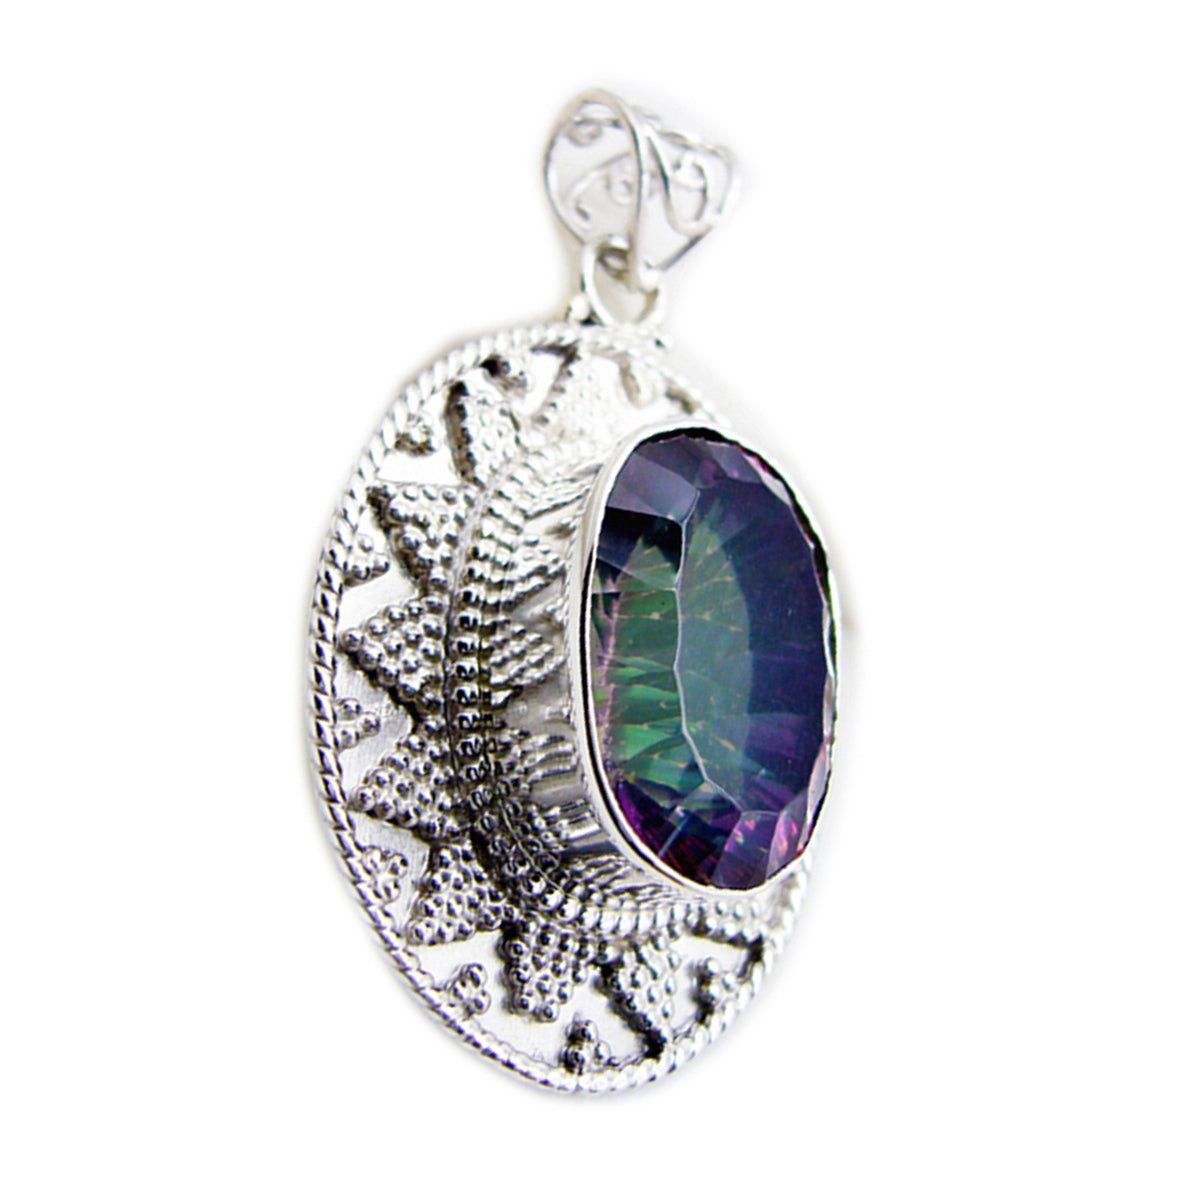 Riyo valiente piedra preciosa ovalada facetada multicolor cuarzo místico colgante de plata de ley regalo para mujeres